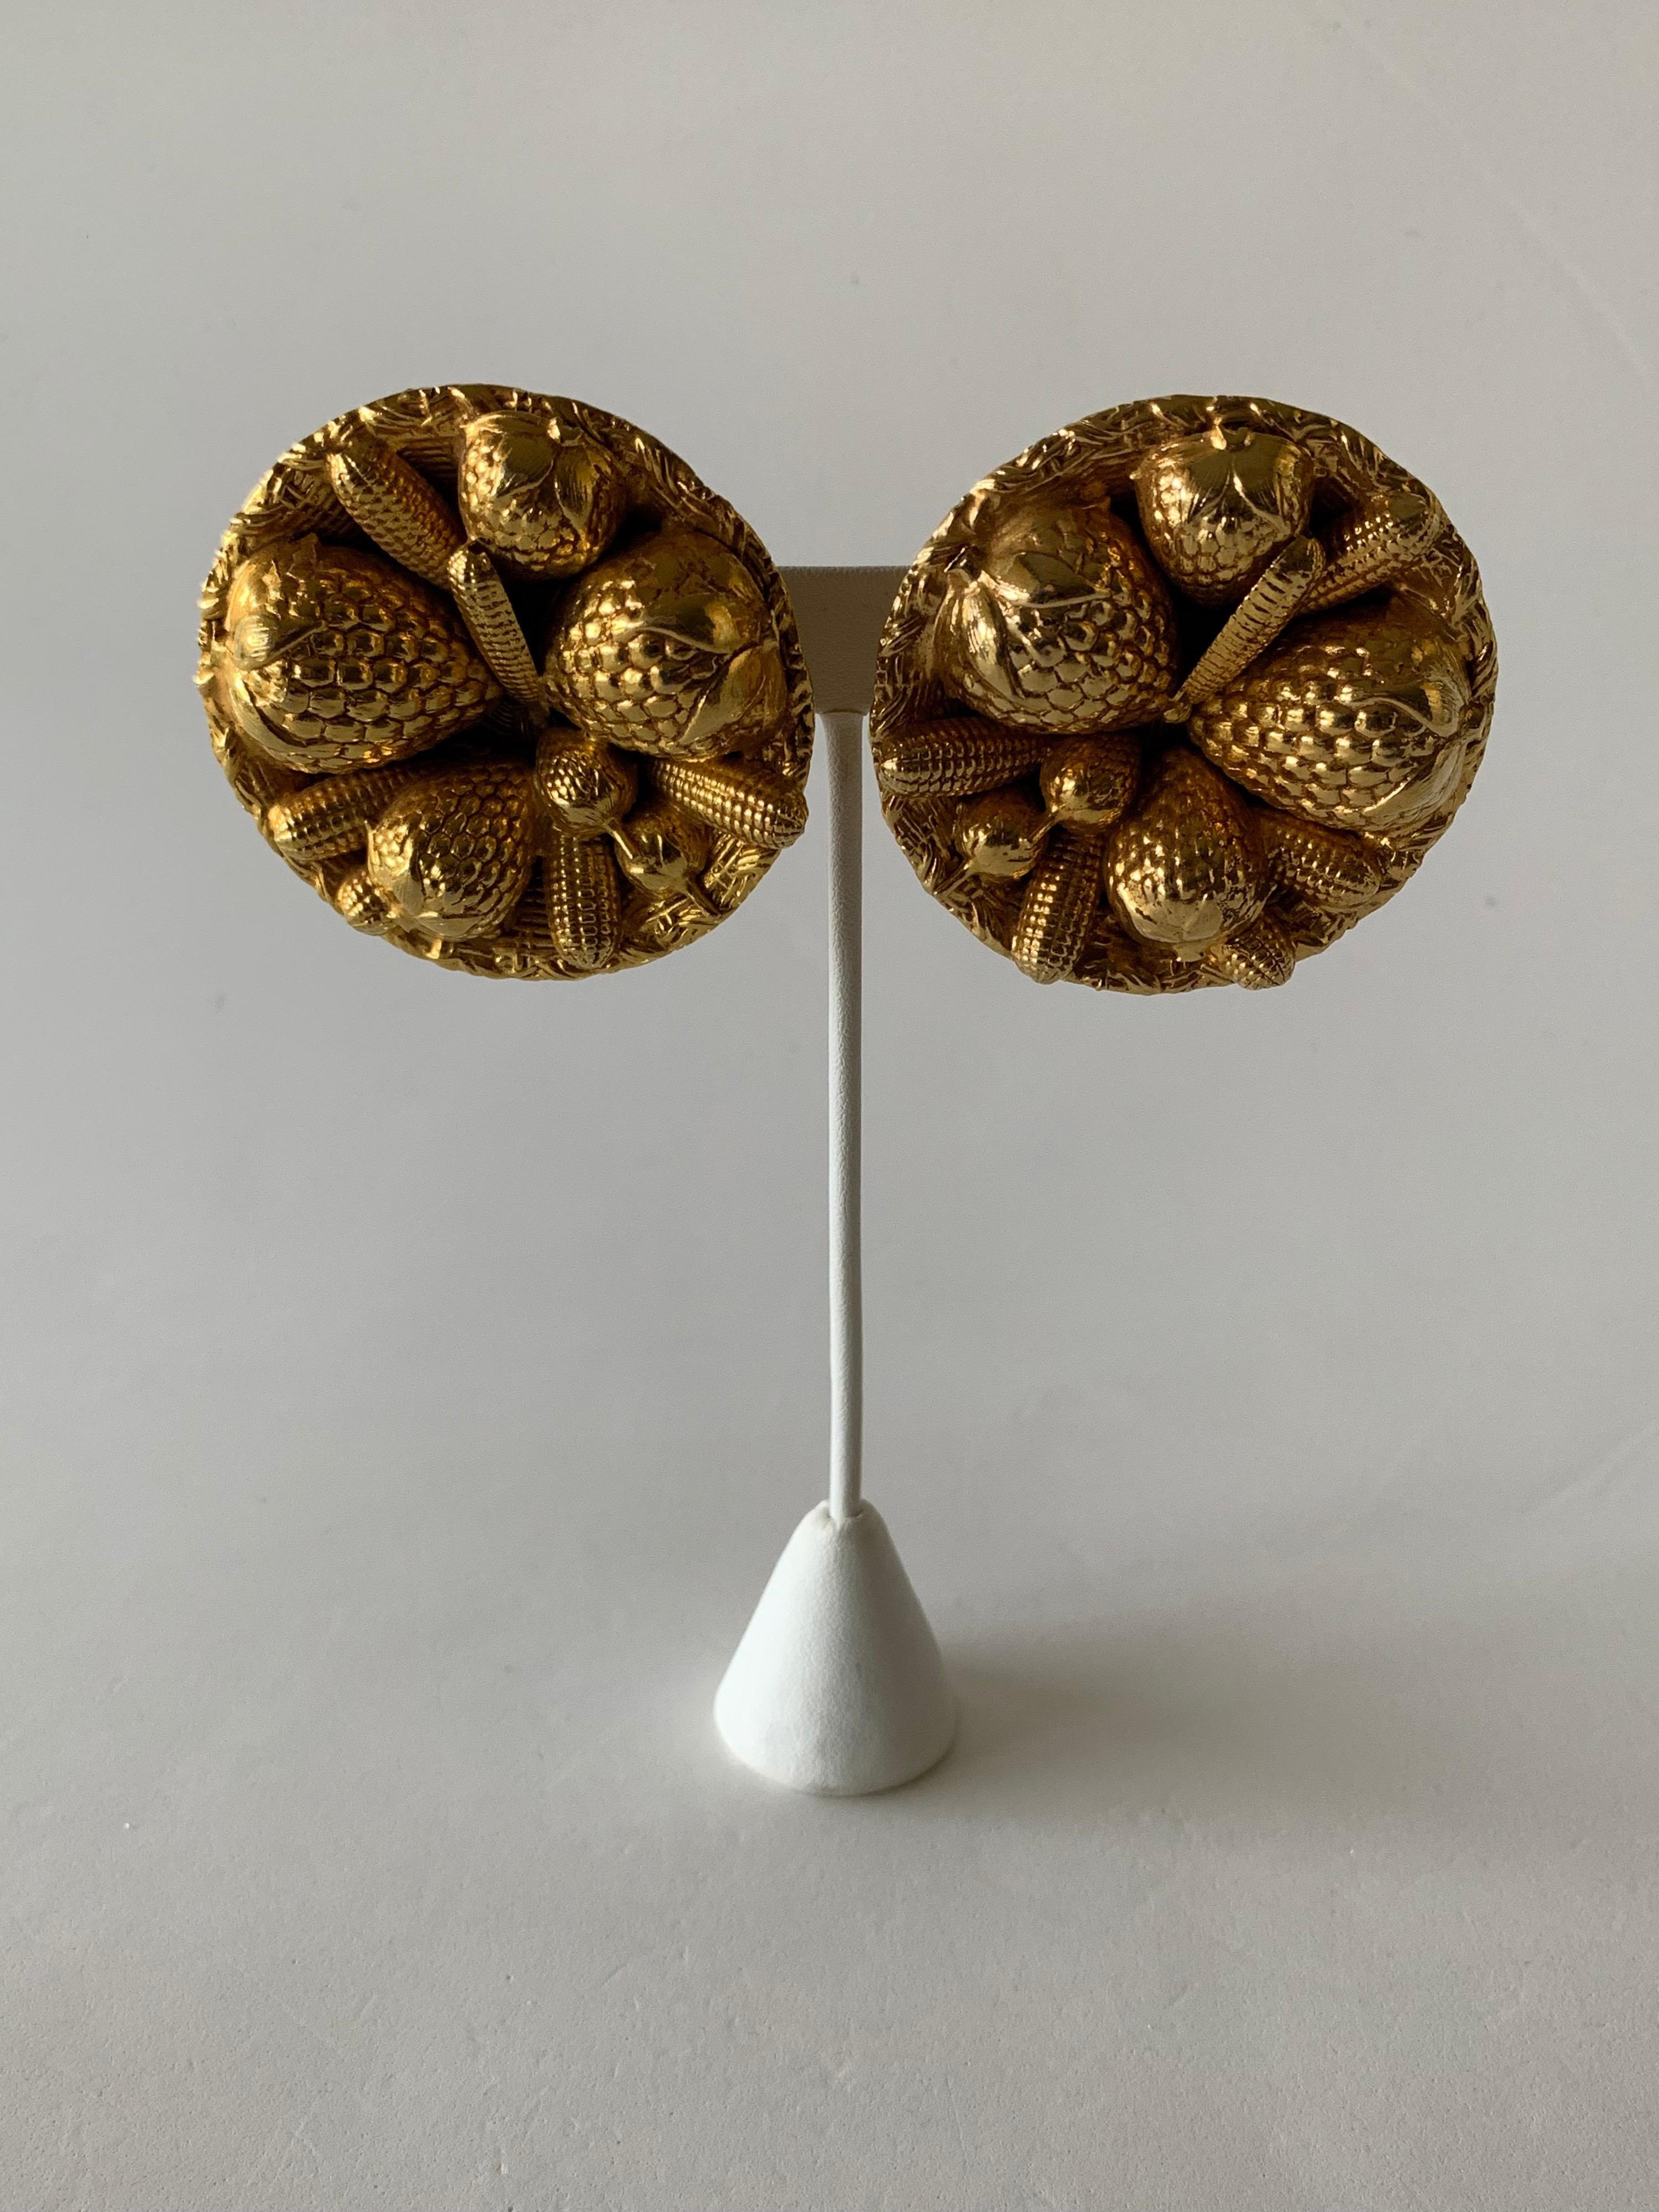 Ein einzigartiges, stilvolles Paar vergoldeter Vintage-Ohrringe des französischen Designers Dominque Aurientis. Die großen Ohrringe bestehen aus vergoldetem Metall und stellen einen großen Strohkorb voller Erdbeeren dar. Die Vintage-Ohrringe sind